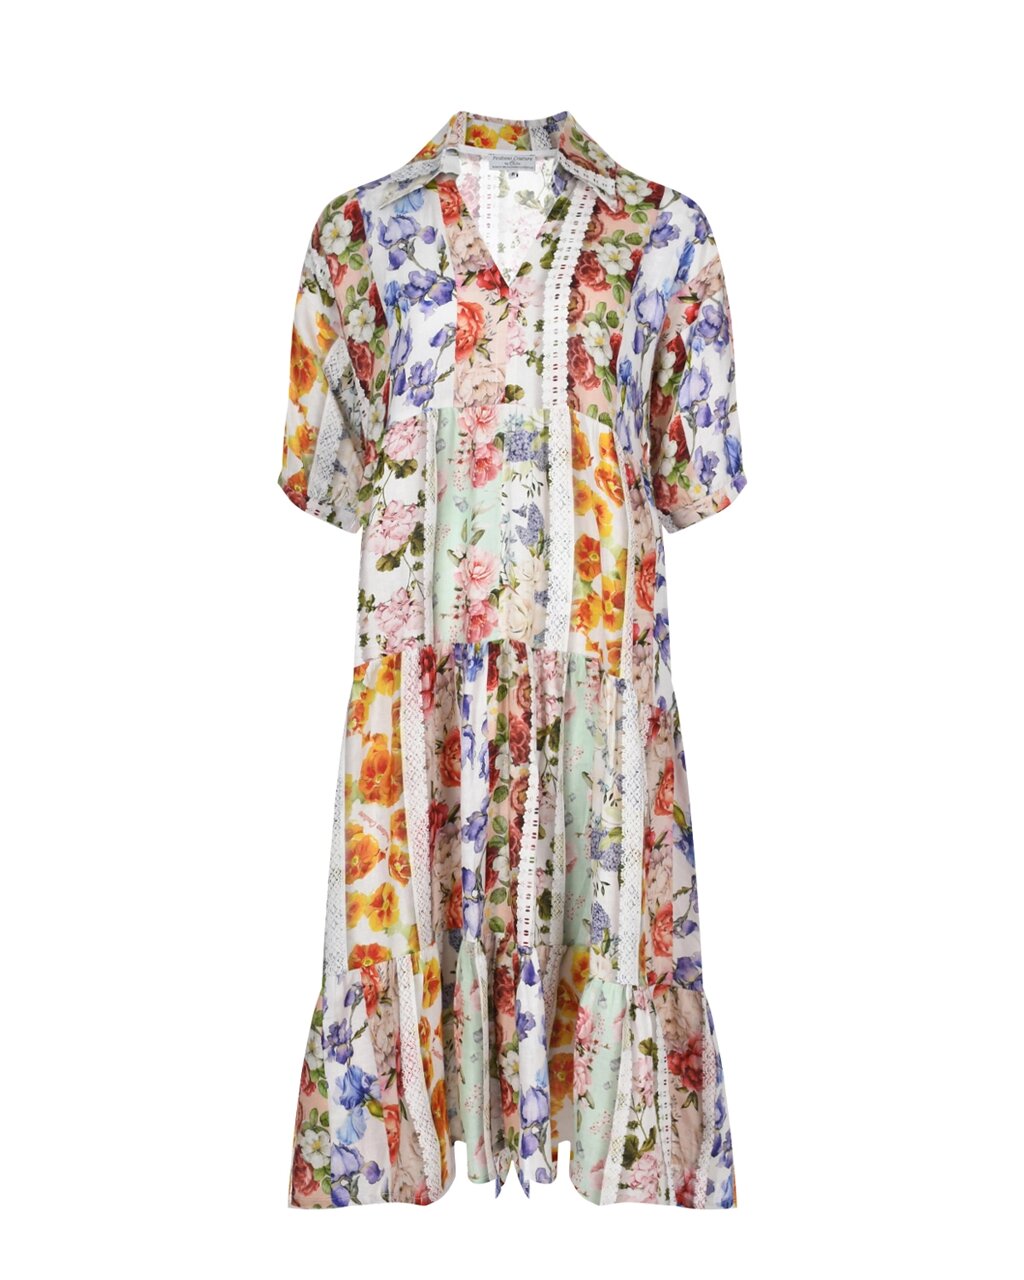 Платье льняное миди со сплошным цветочным принтом Positano Couture от компании Admi - фото 1